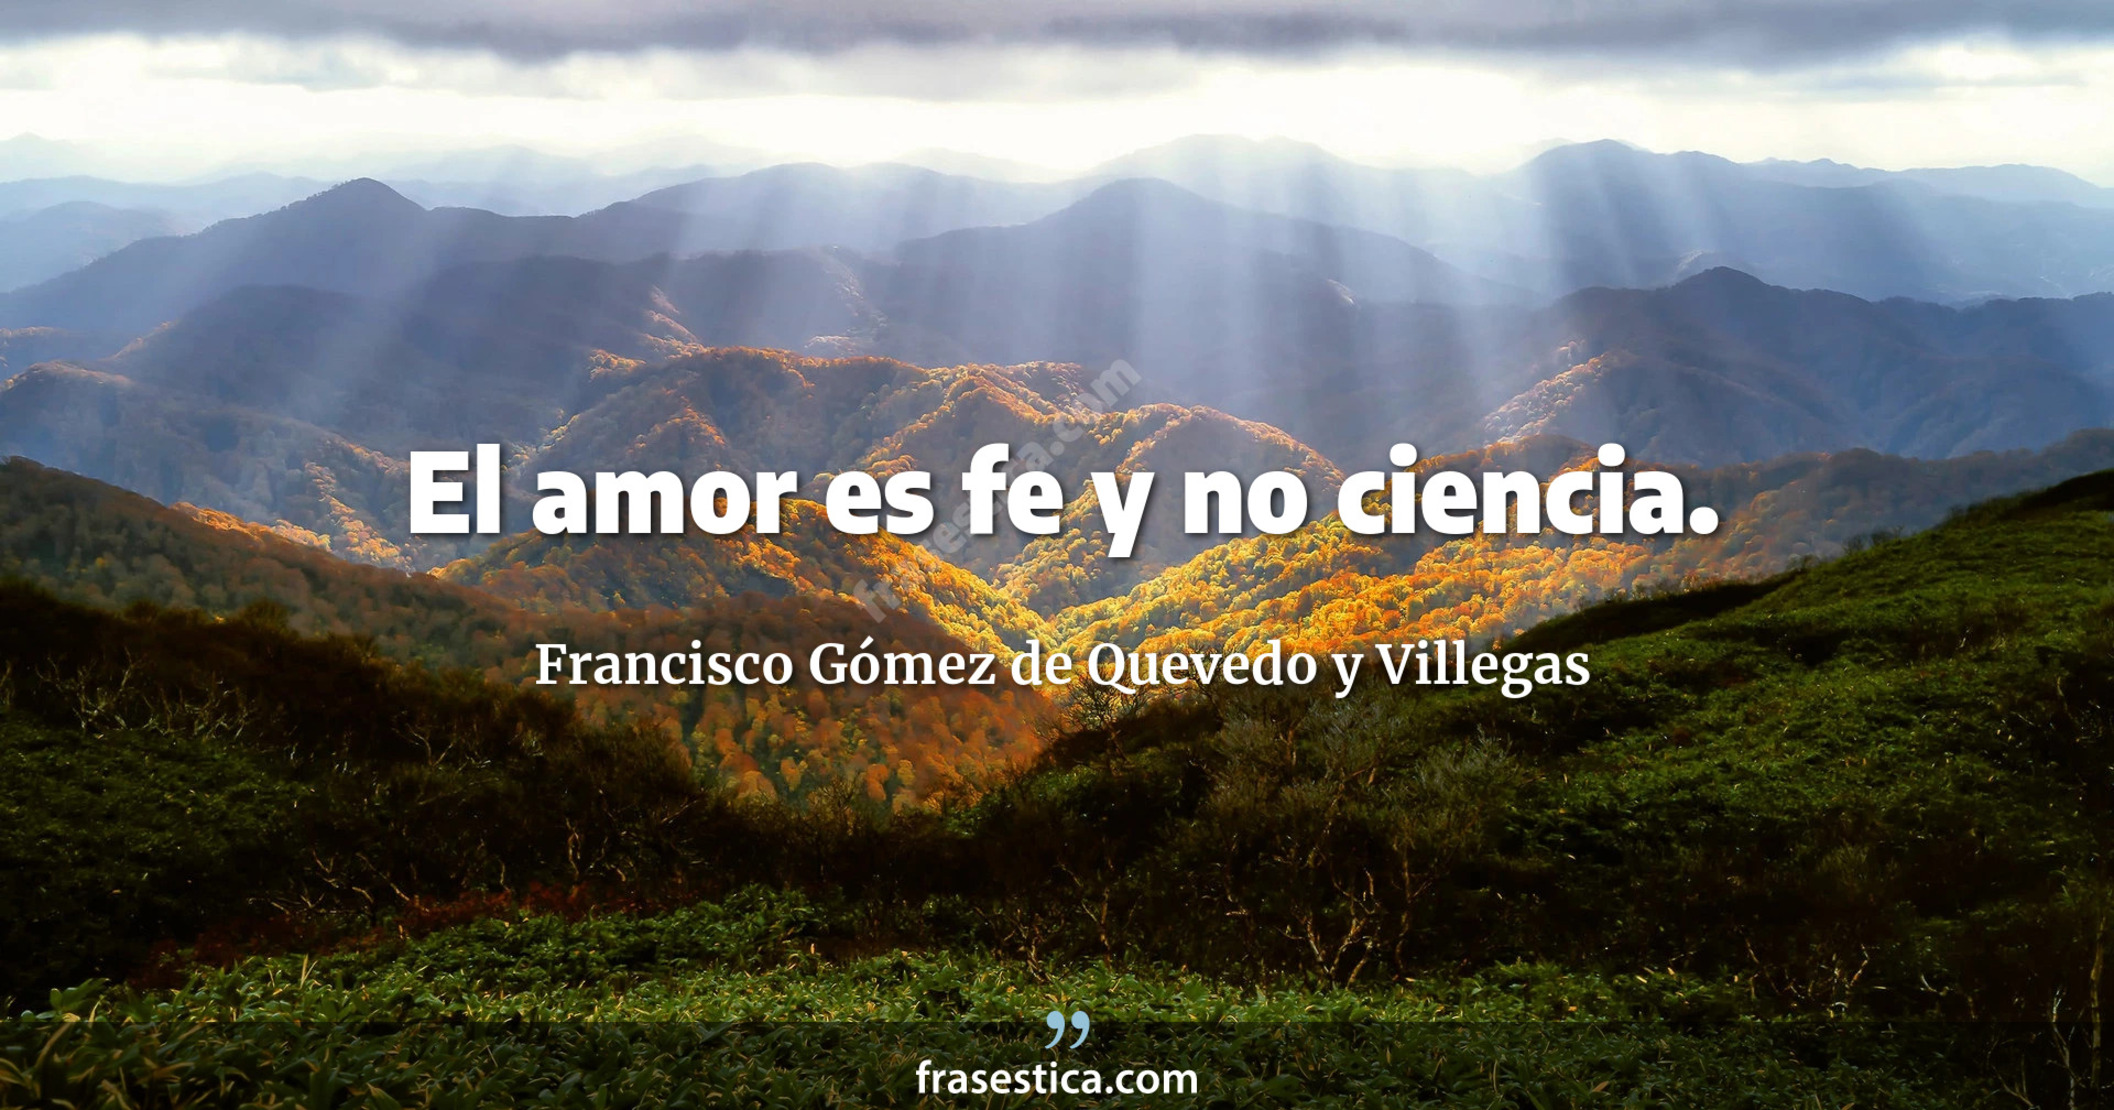 El amor es fe y no ciencia. - Francisco Gómez de Quevedo y Villegas